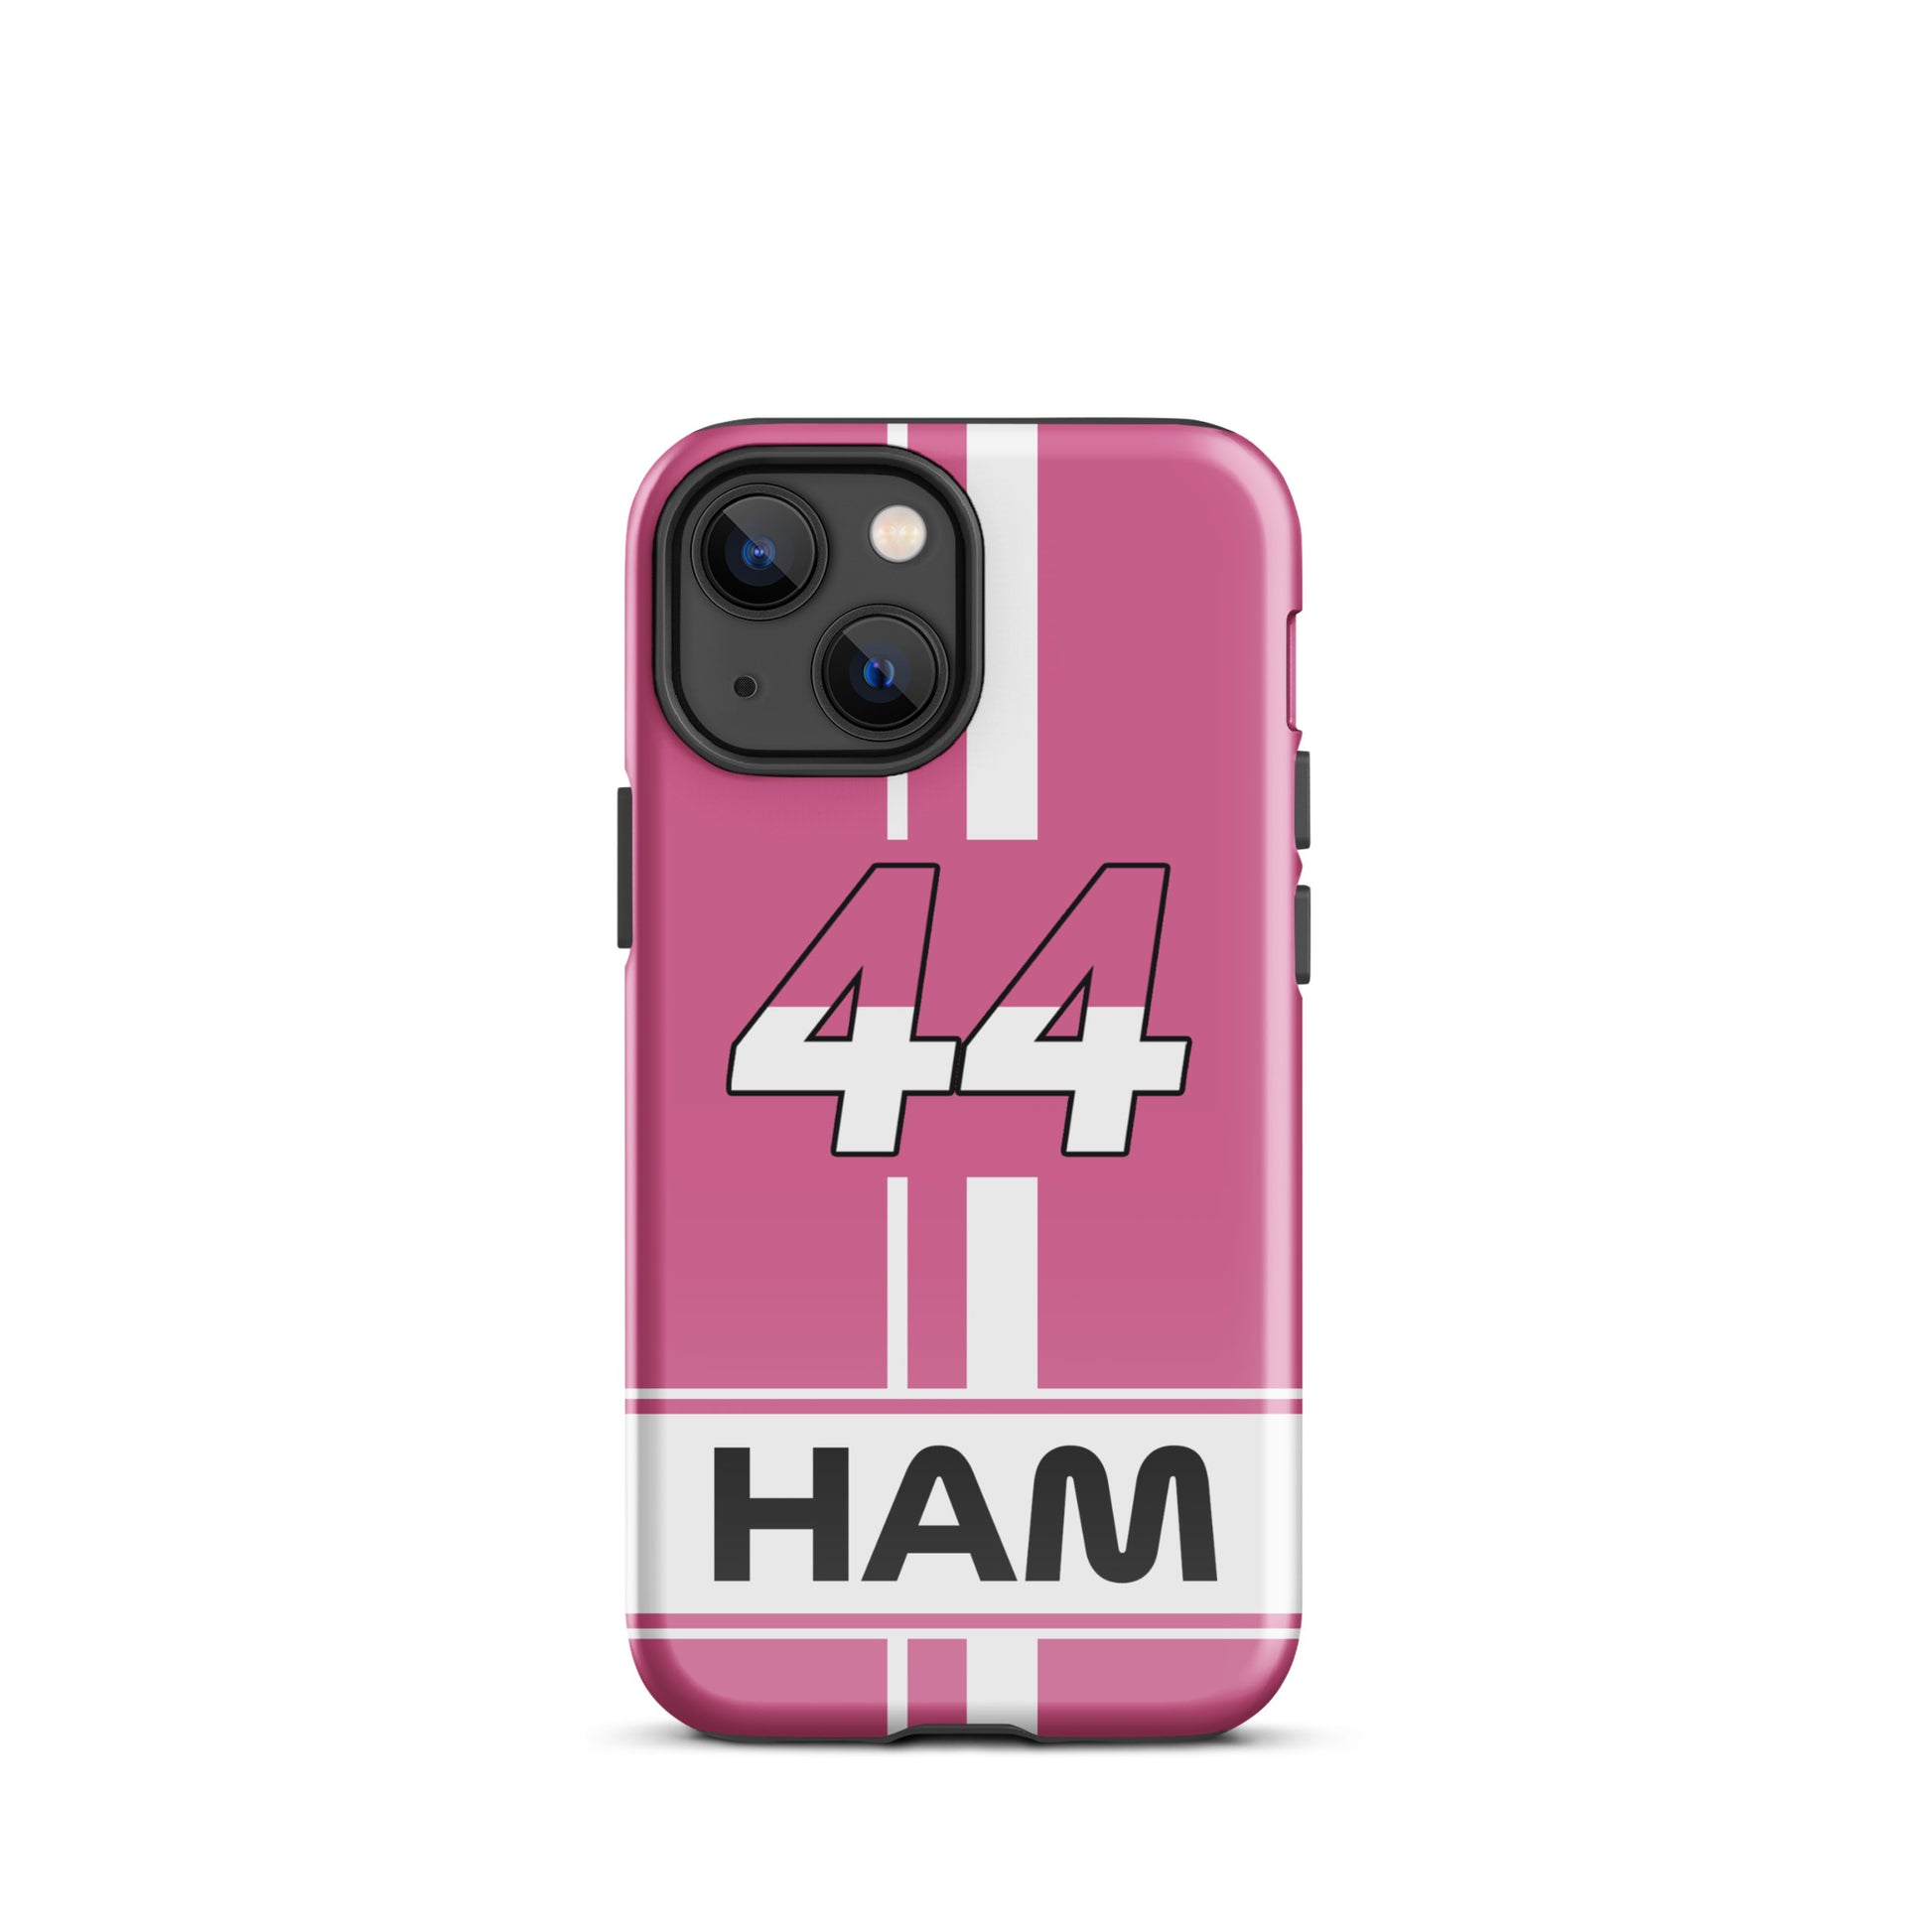 Lewis Hamilton Miami Tough iPhone 13 mini glossy case